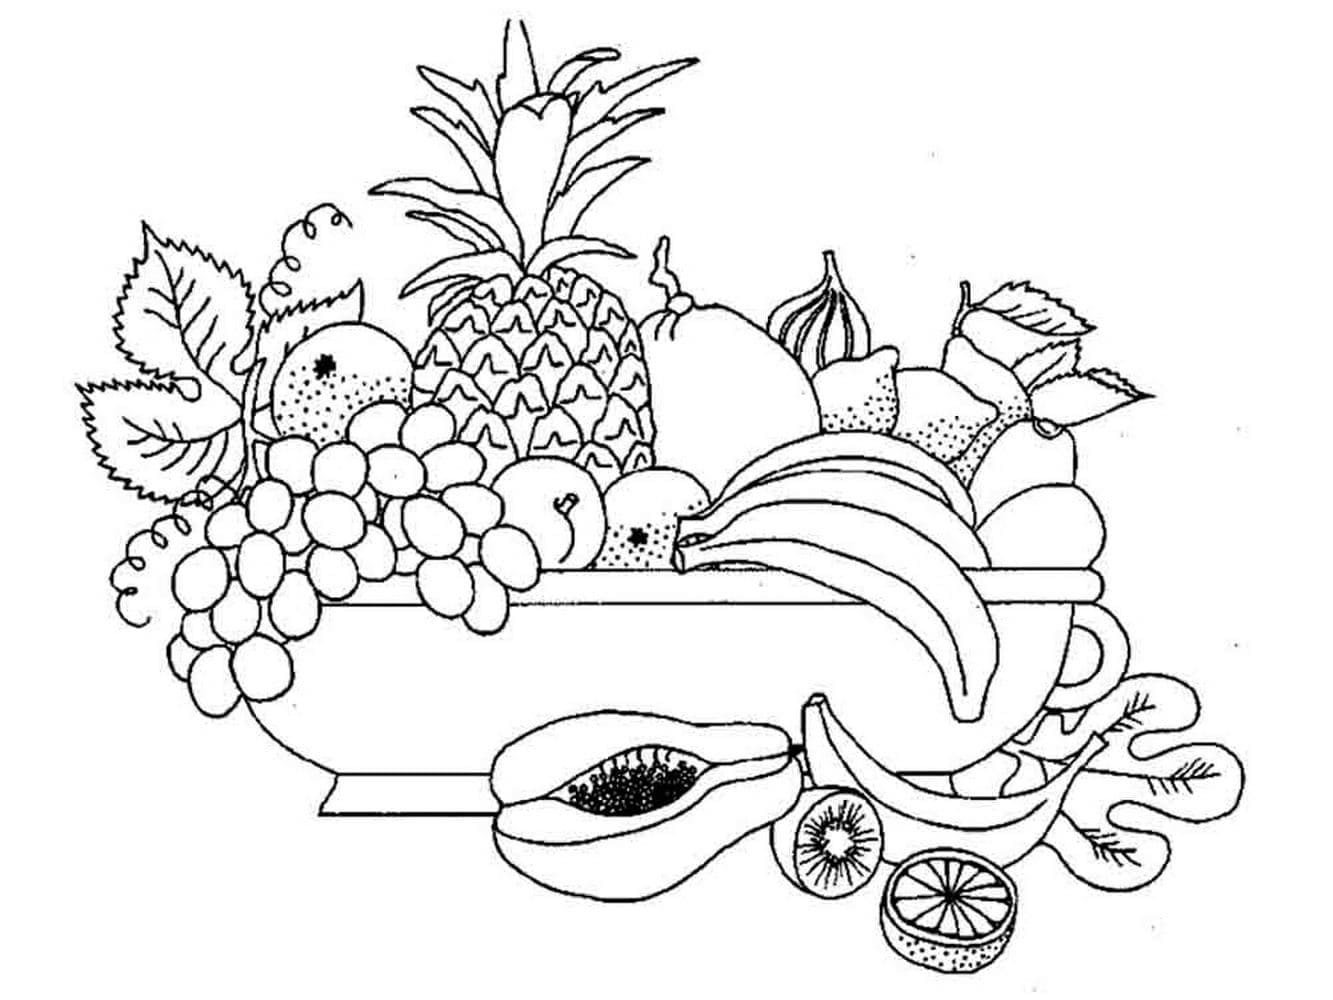 Dibujos de Frutas para colorear - Descarga o imprime gratis